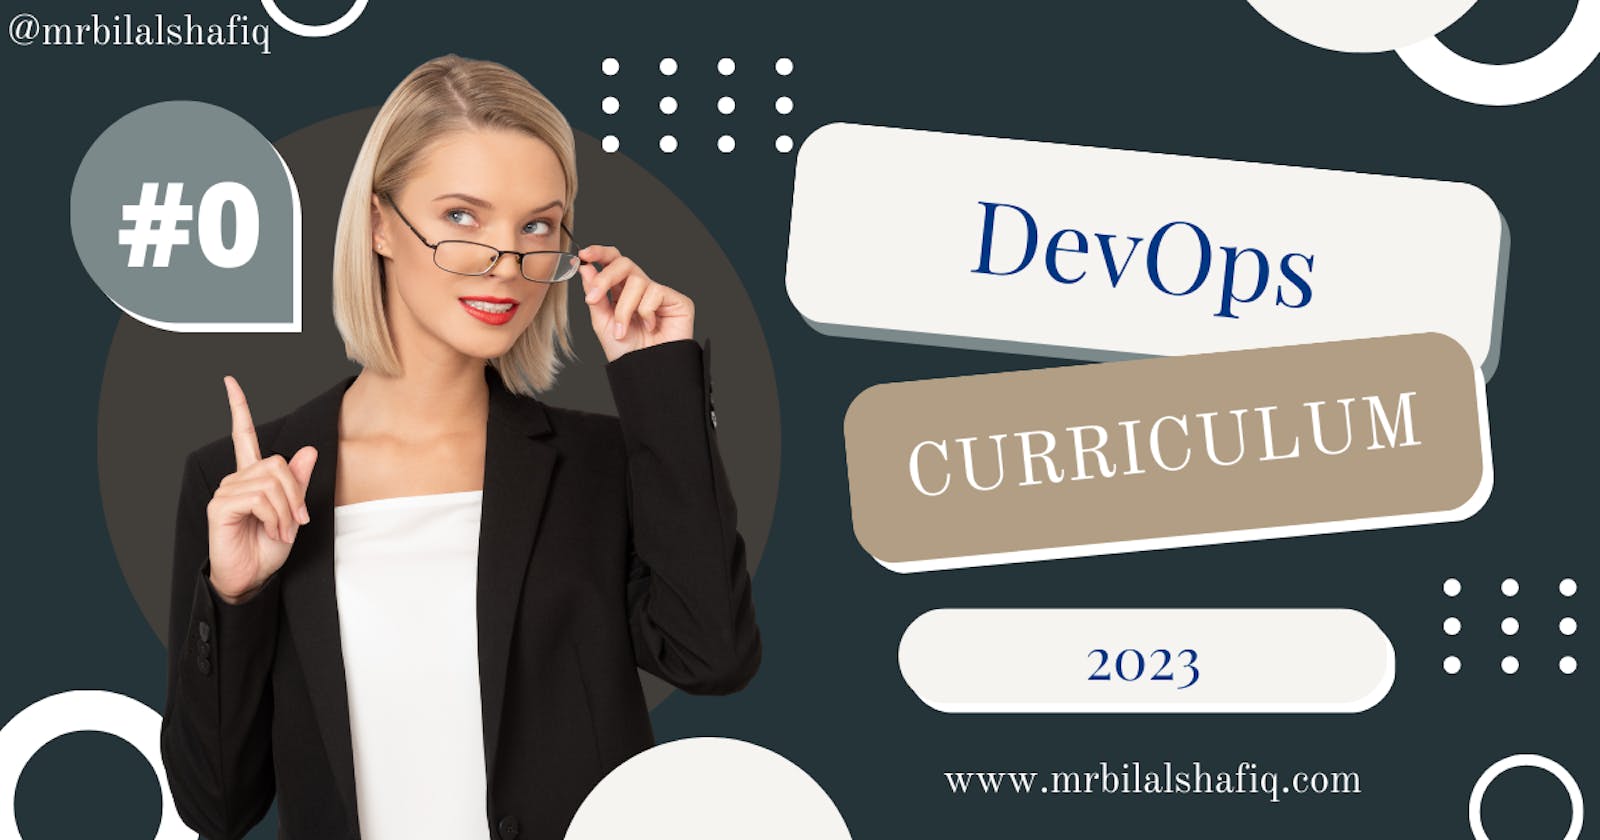 DevOps Curriculum for 2023